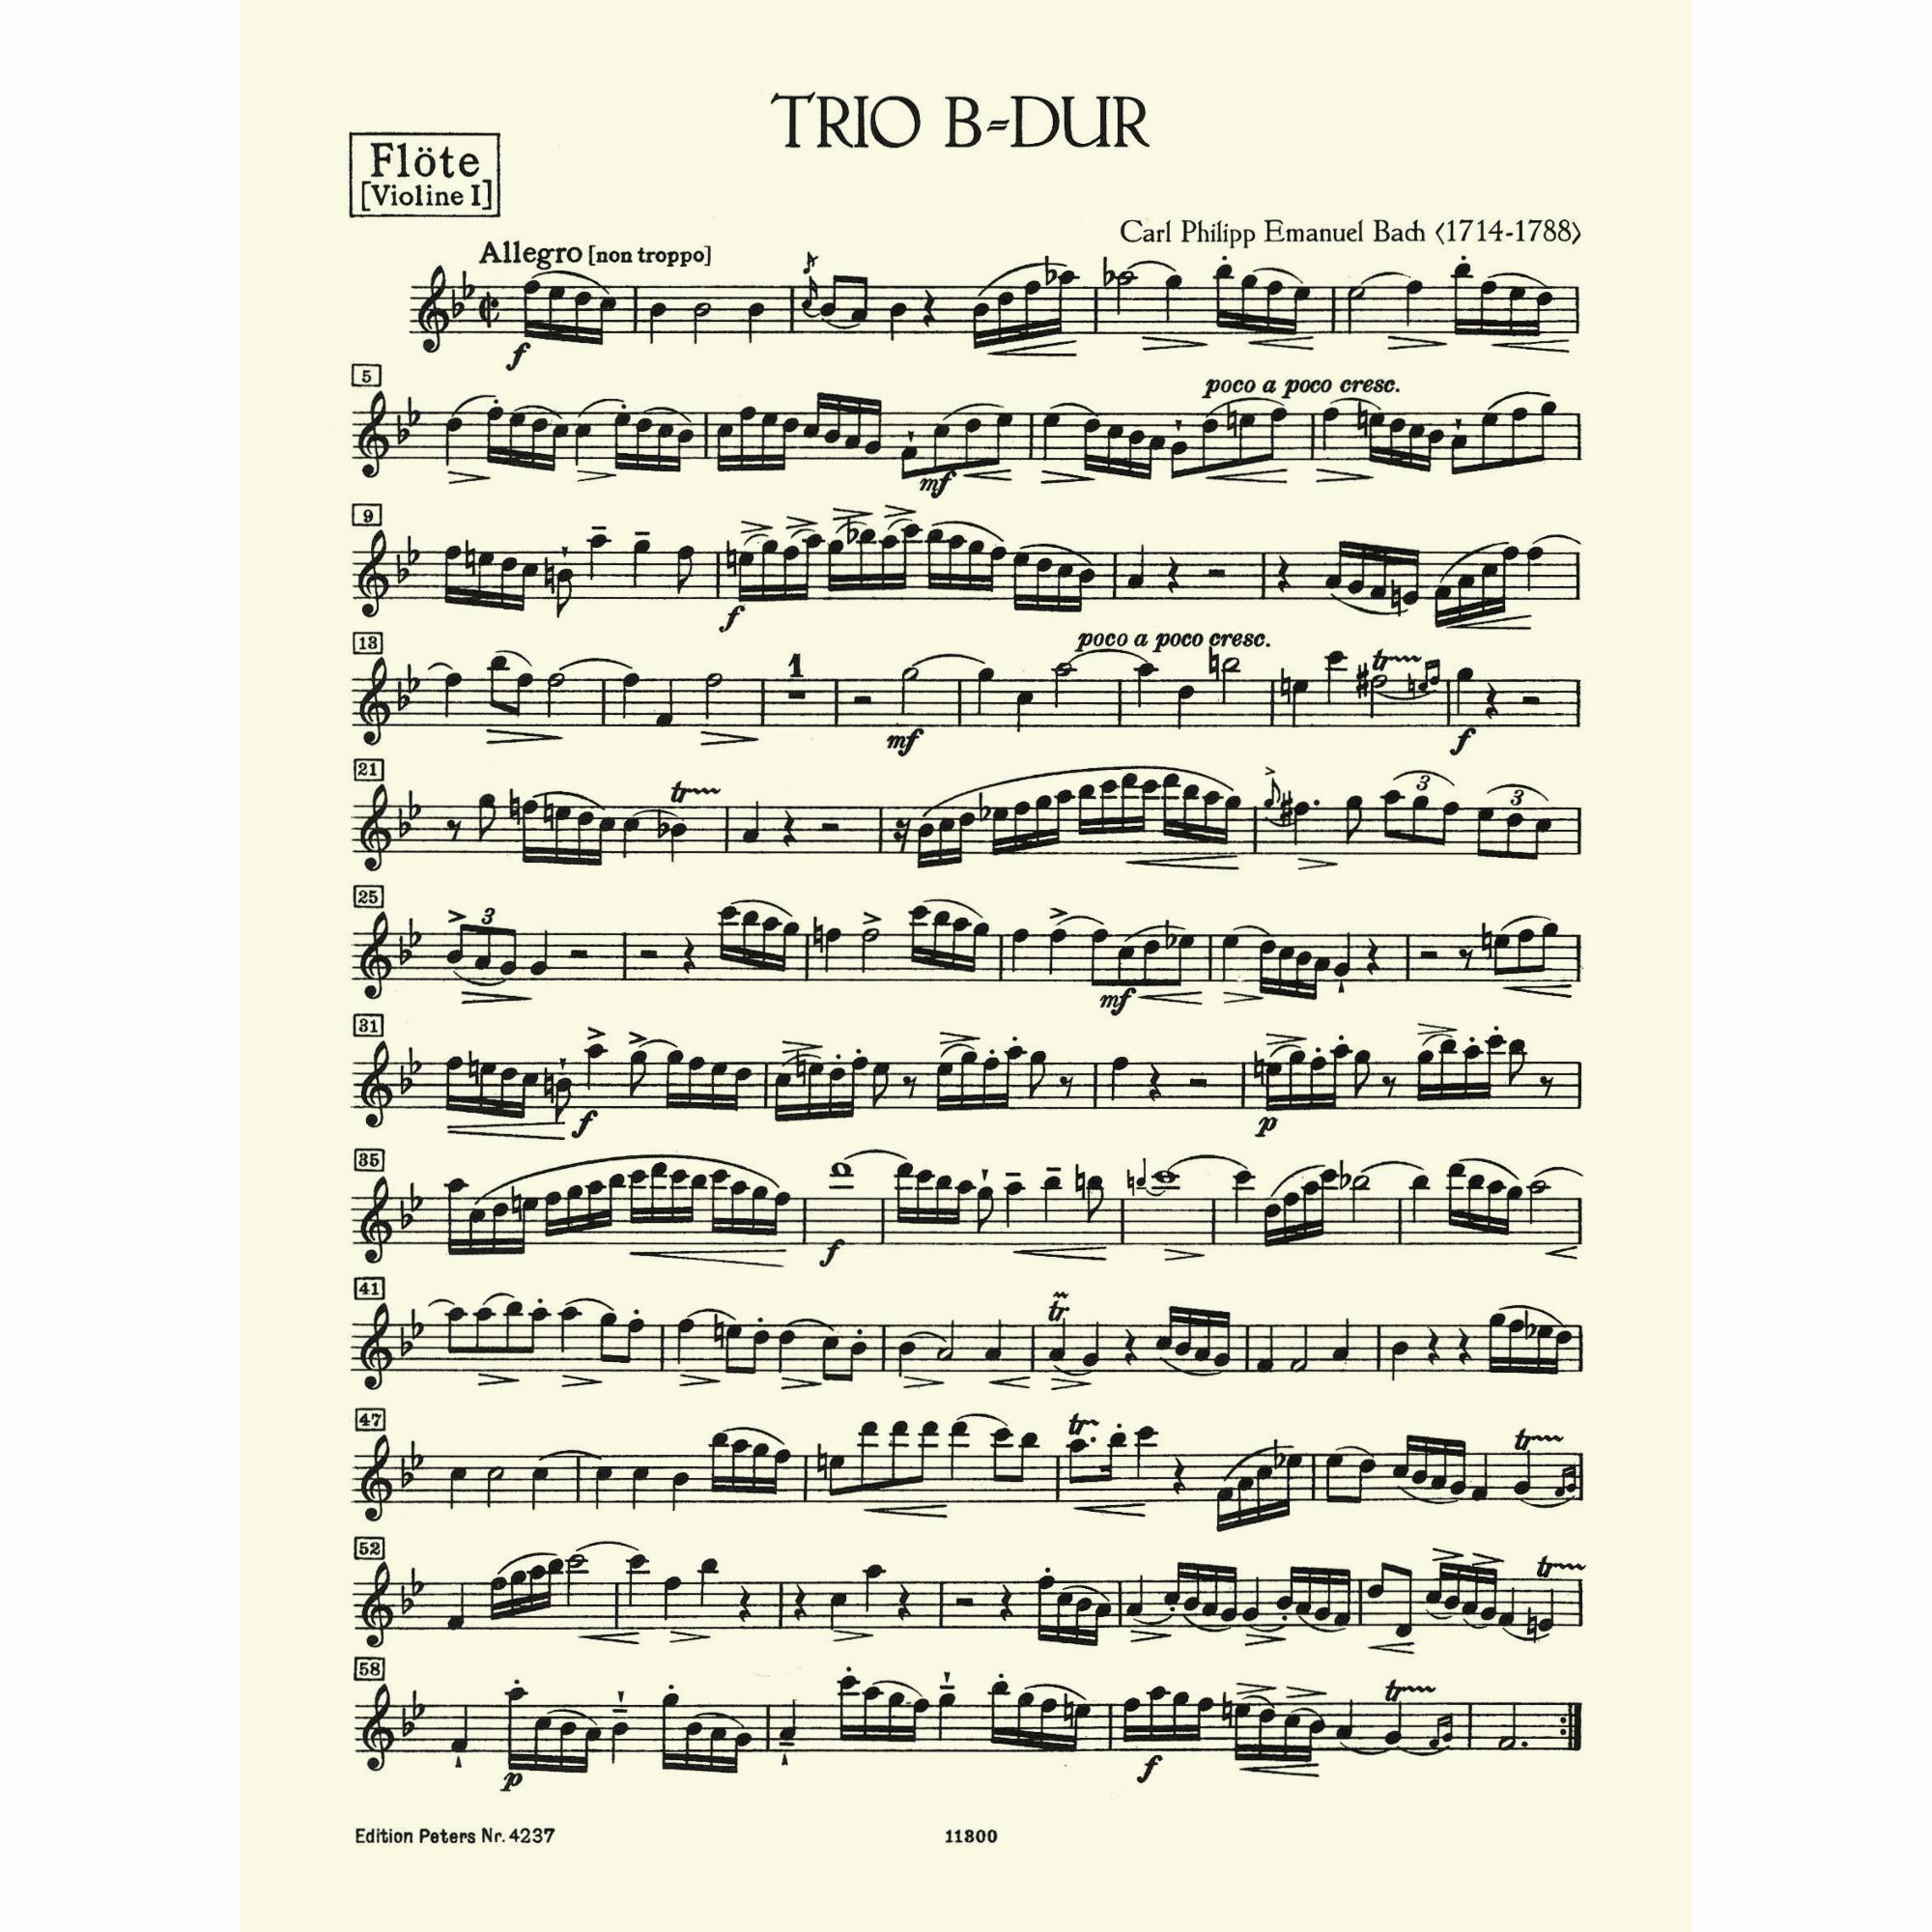 Sample: Flute (Pg. 1)